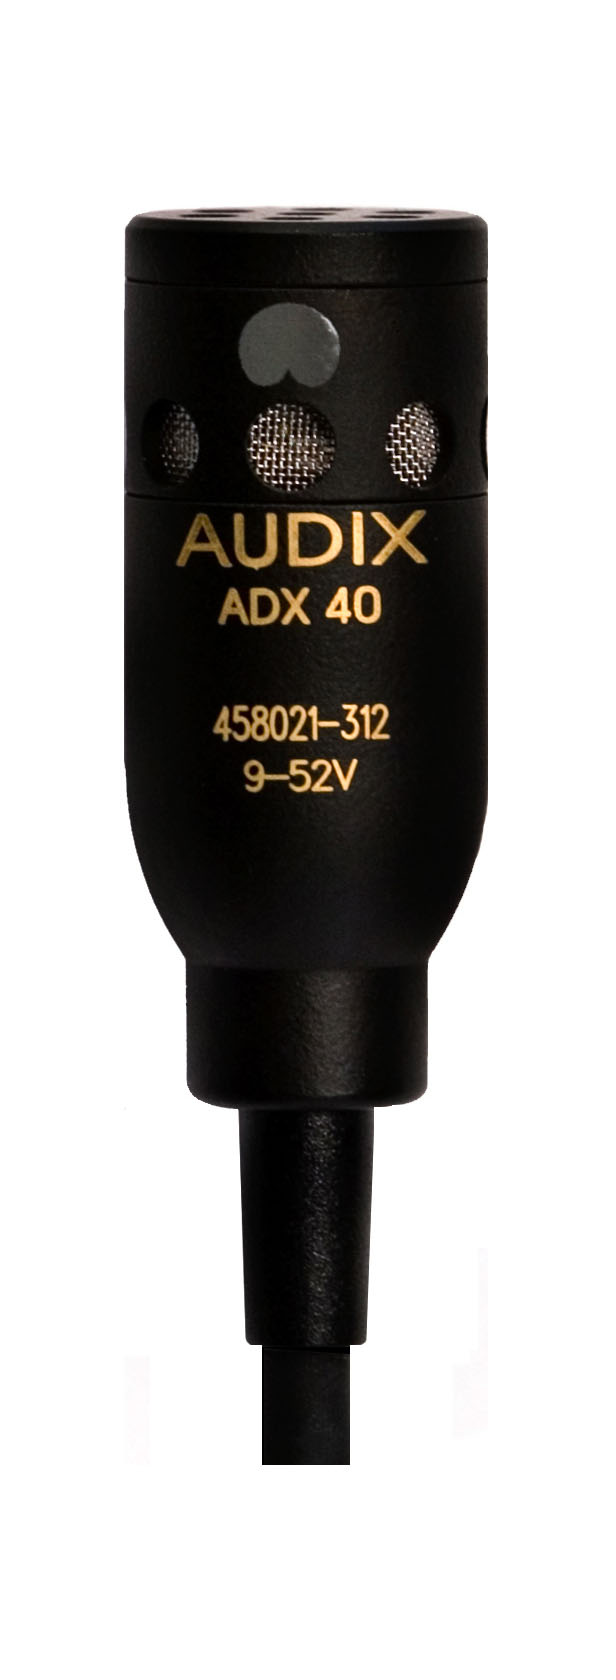 Специальные микрофоны AUDIX ADX40 специальные микрофоны jts st 6000